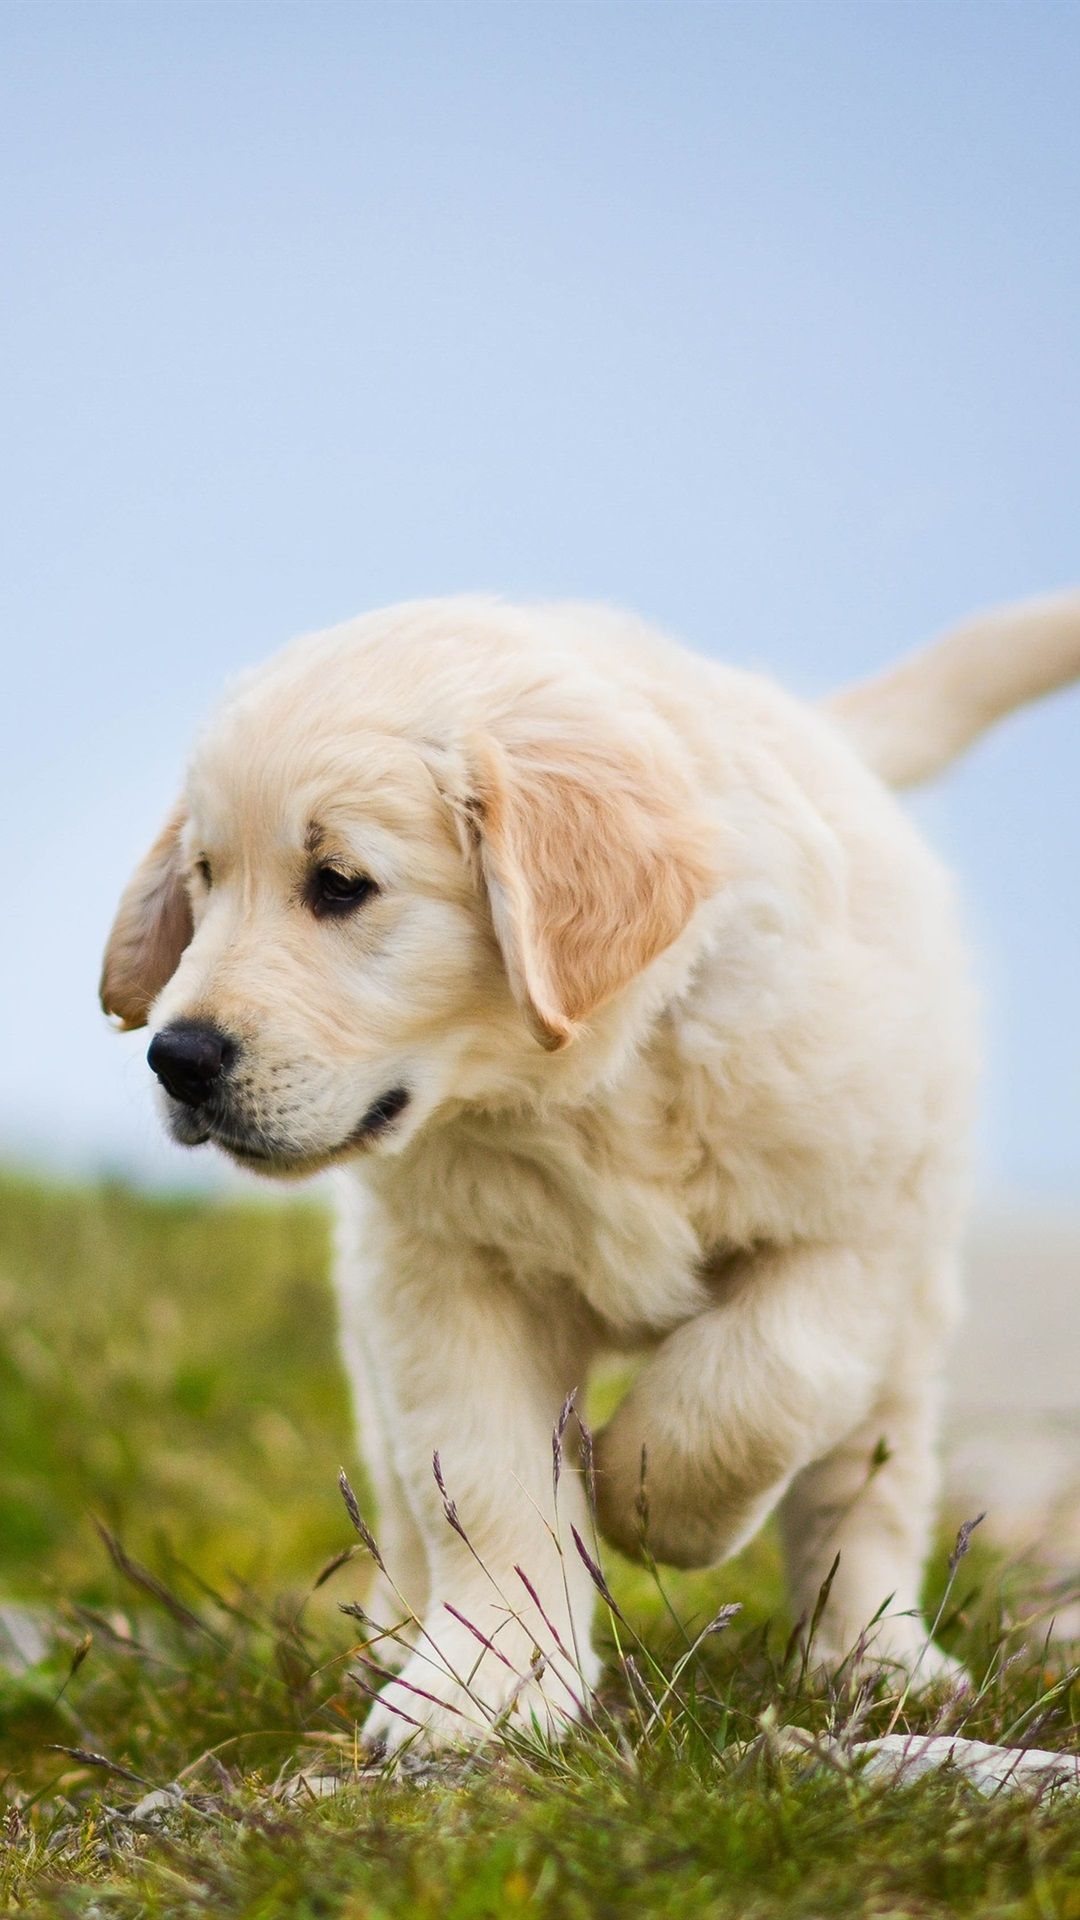 Golden Retriever, Cute Dog, Puppy, Grass 1080x1920 IPhone 8 7 6 6S